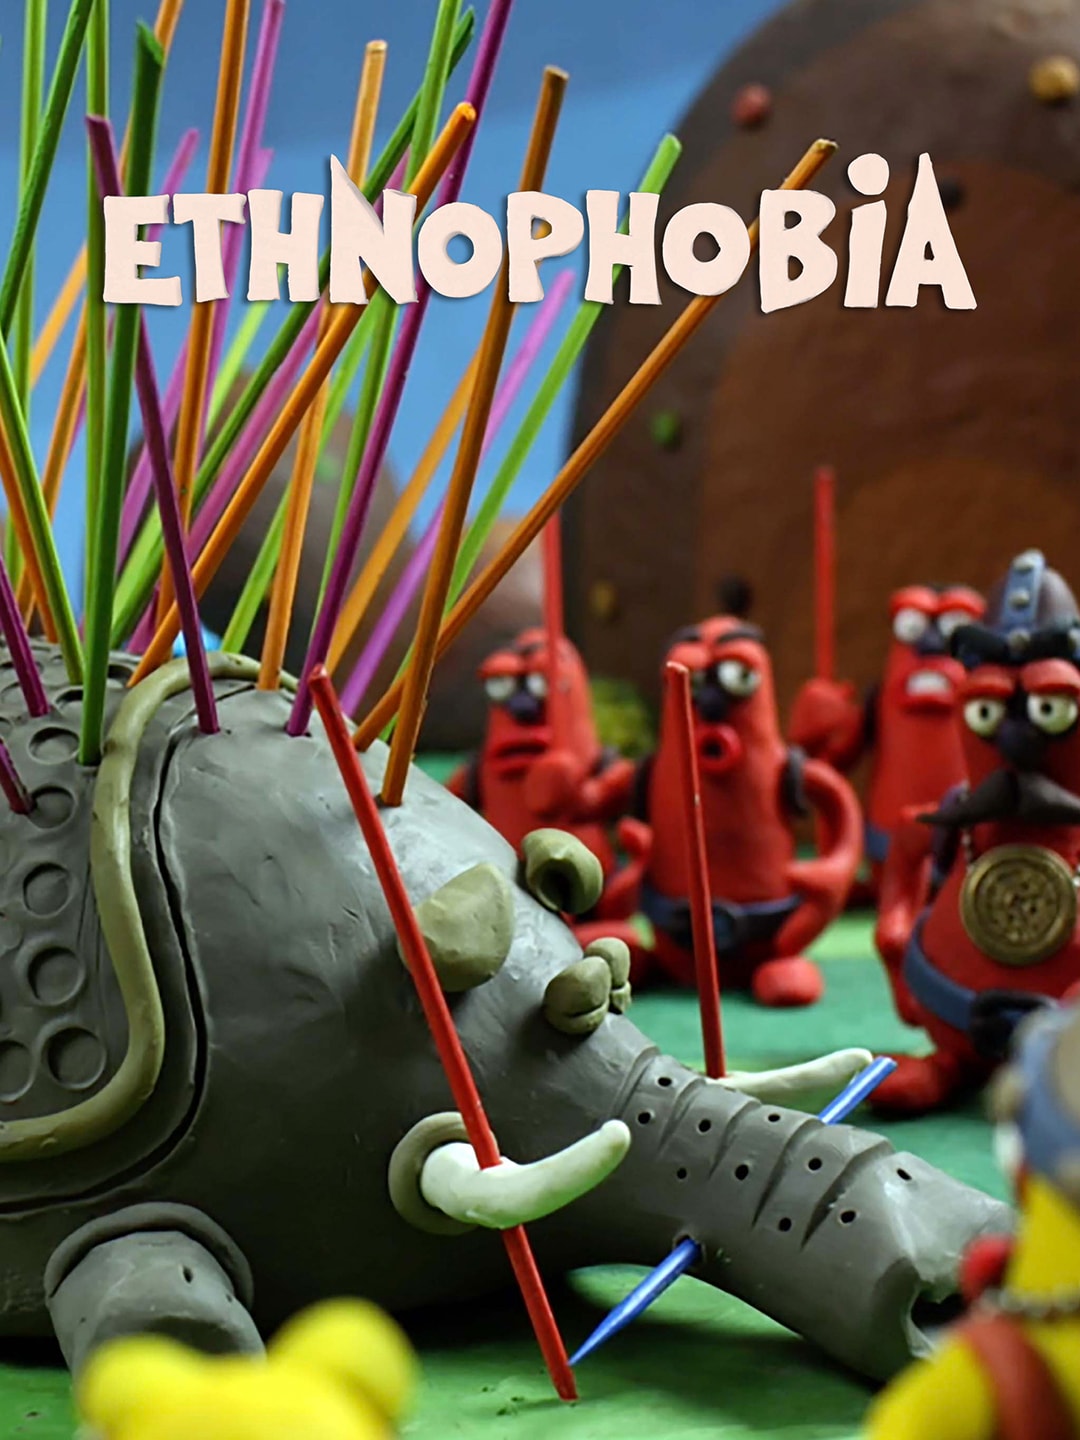 Ethnophobia